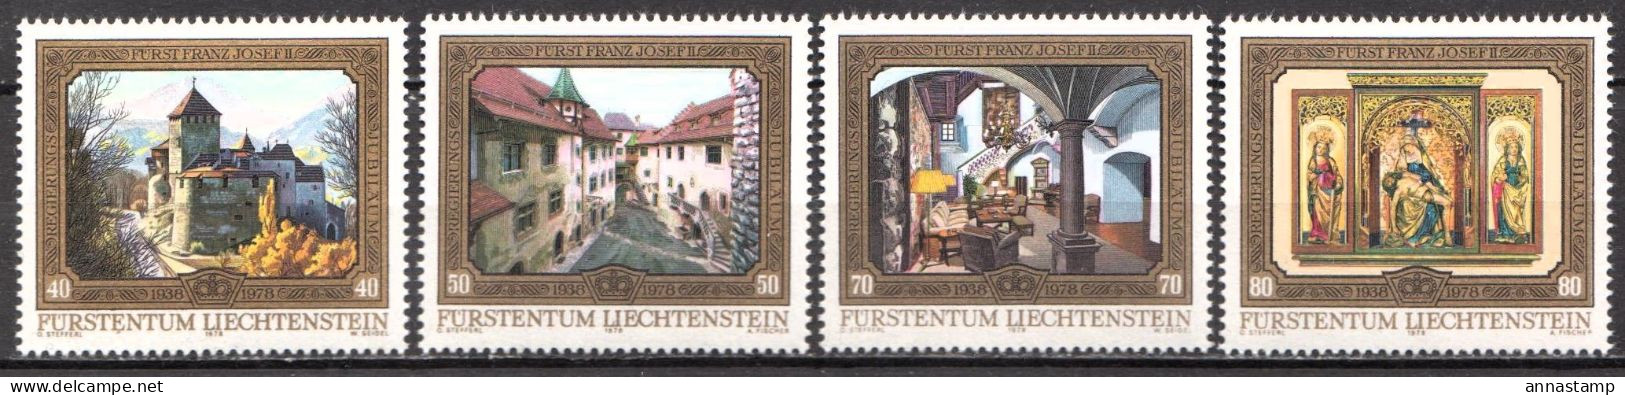 Liechtenstein MNH Set - Castelli